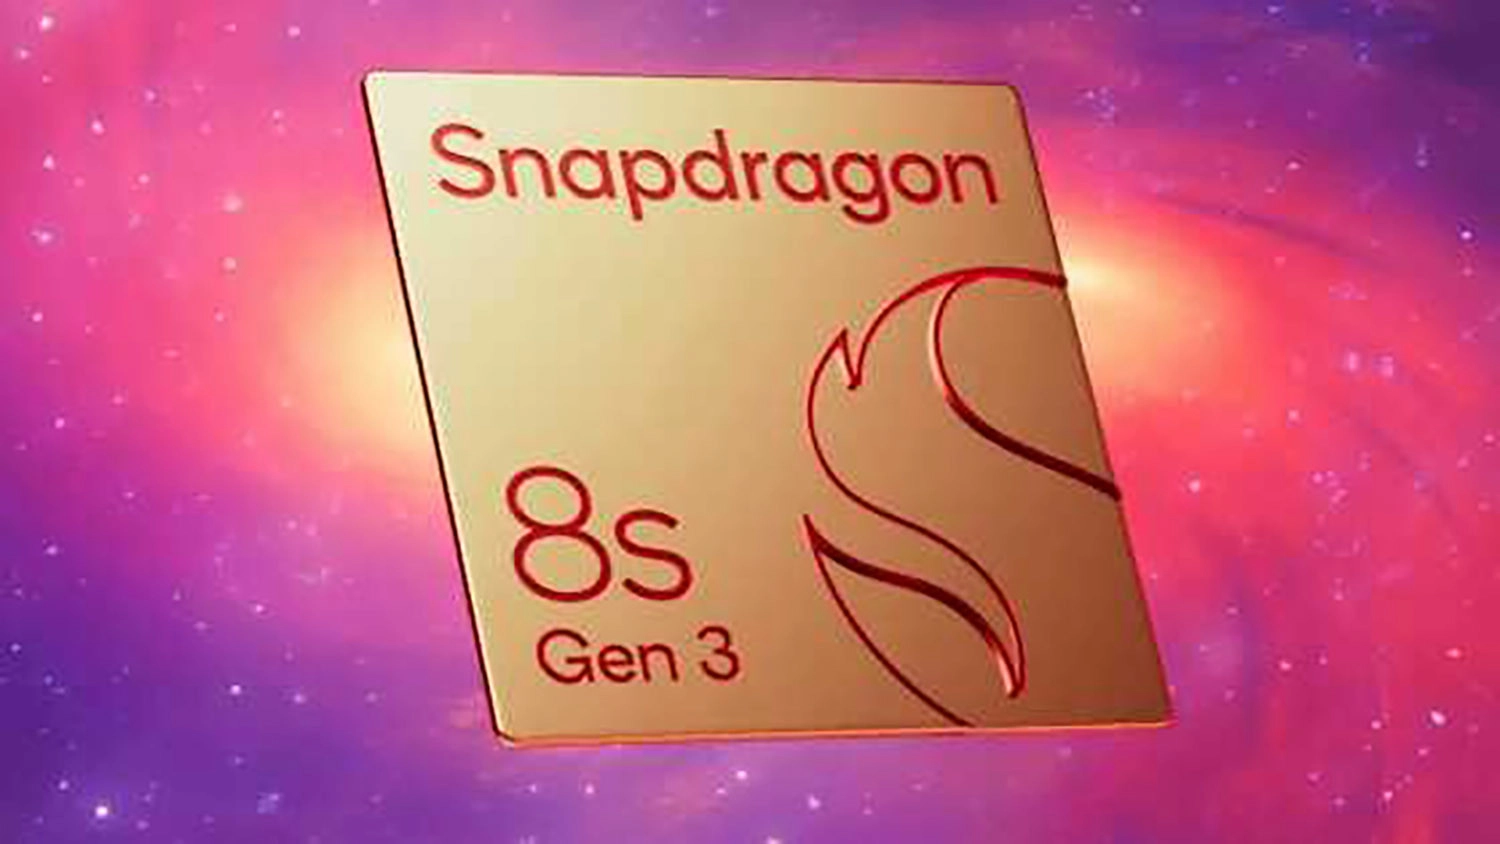 Hiệu suất CPU của Snapdragon 8s Gen 3 cao hơn tới 20%